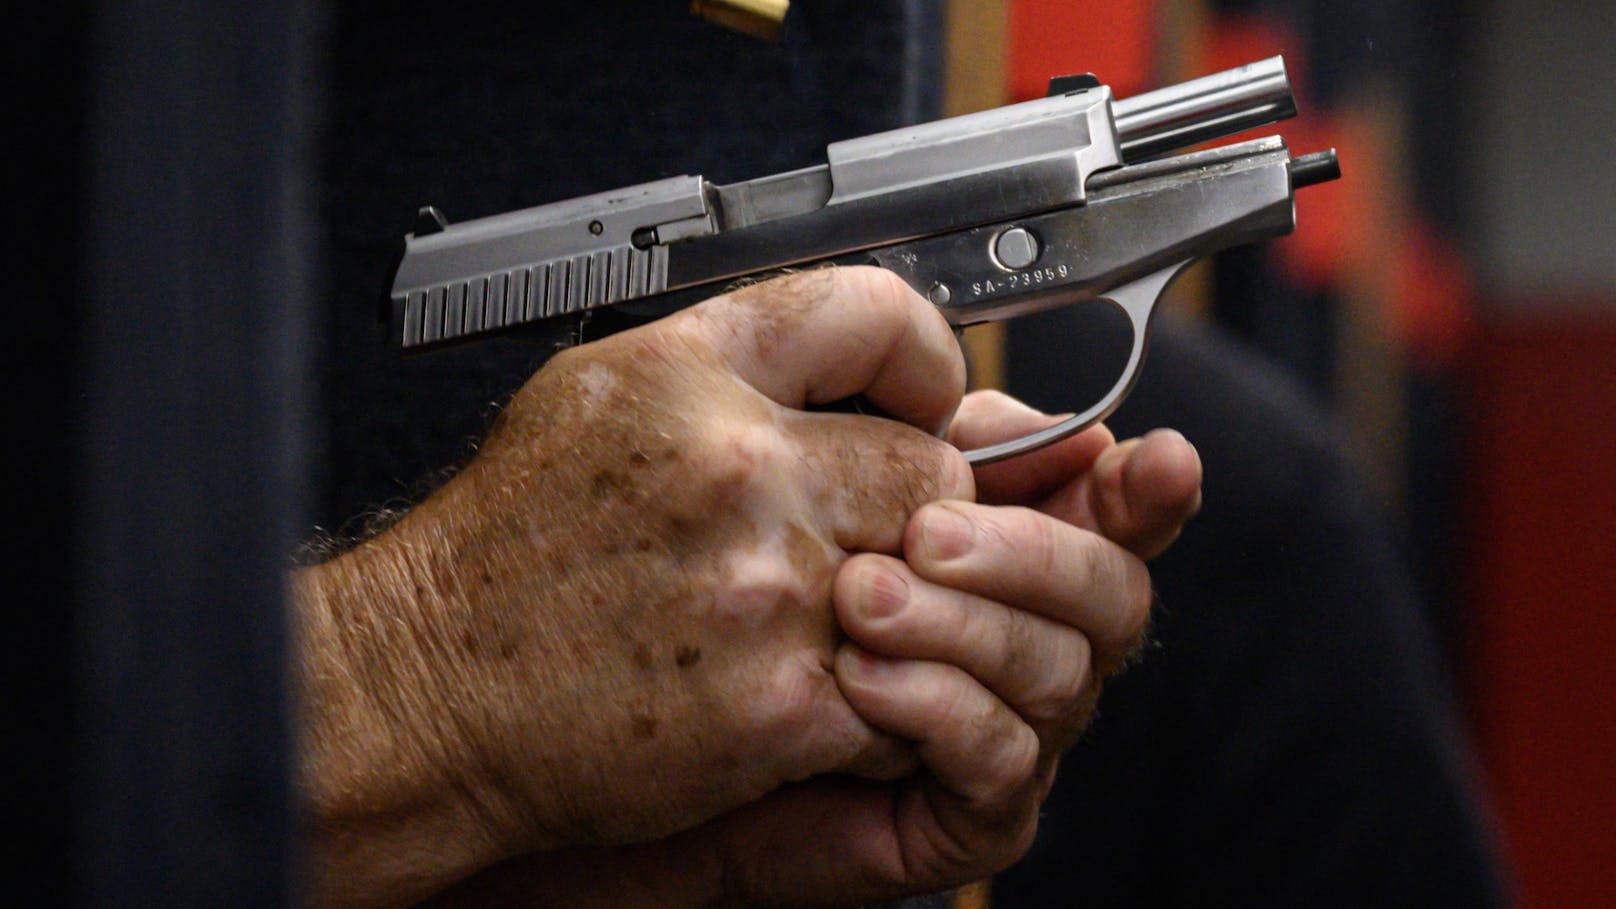 Der Gesetzesentwurf sieht unter anderem vor, dass Waffenkäufer unter 21 Jahren besser überprüft werden sollen.